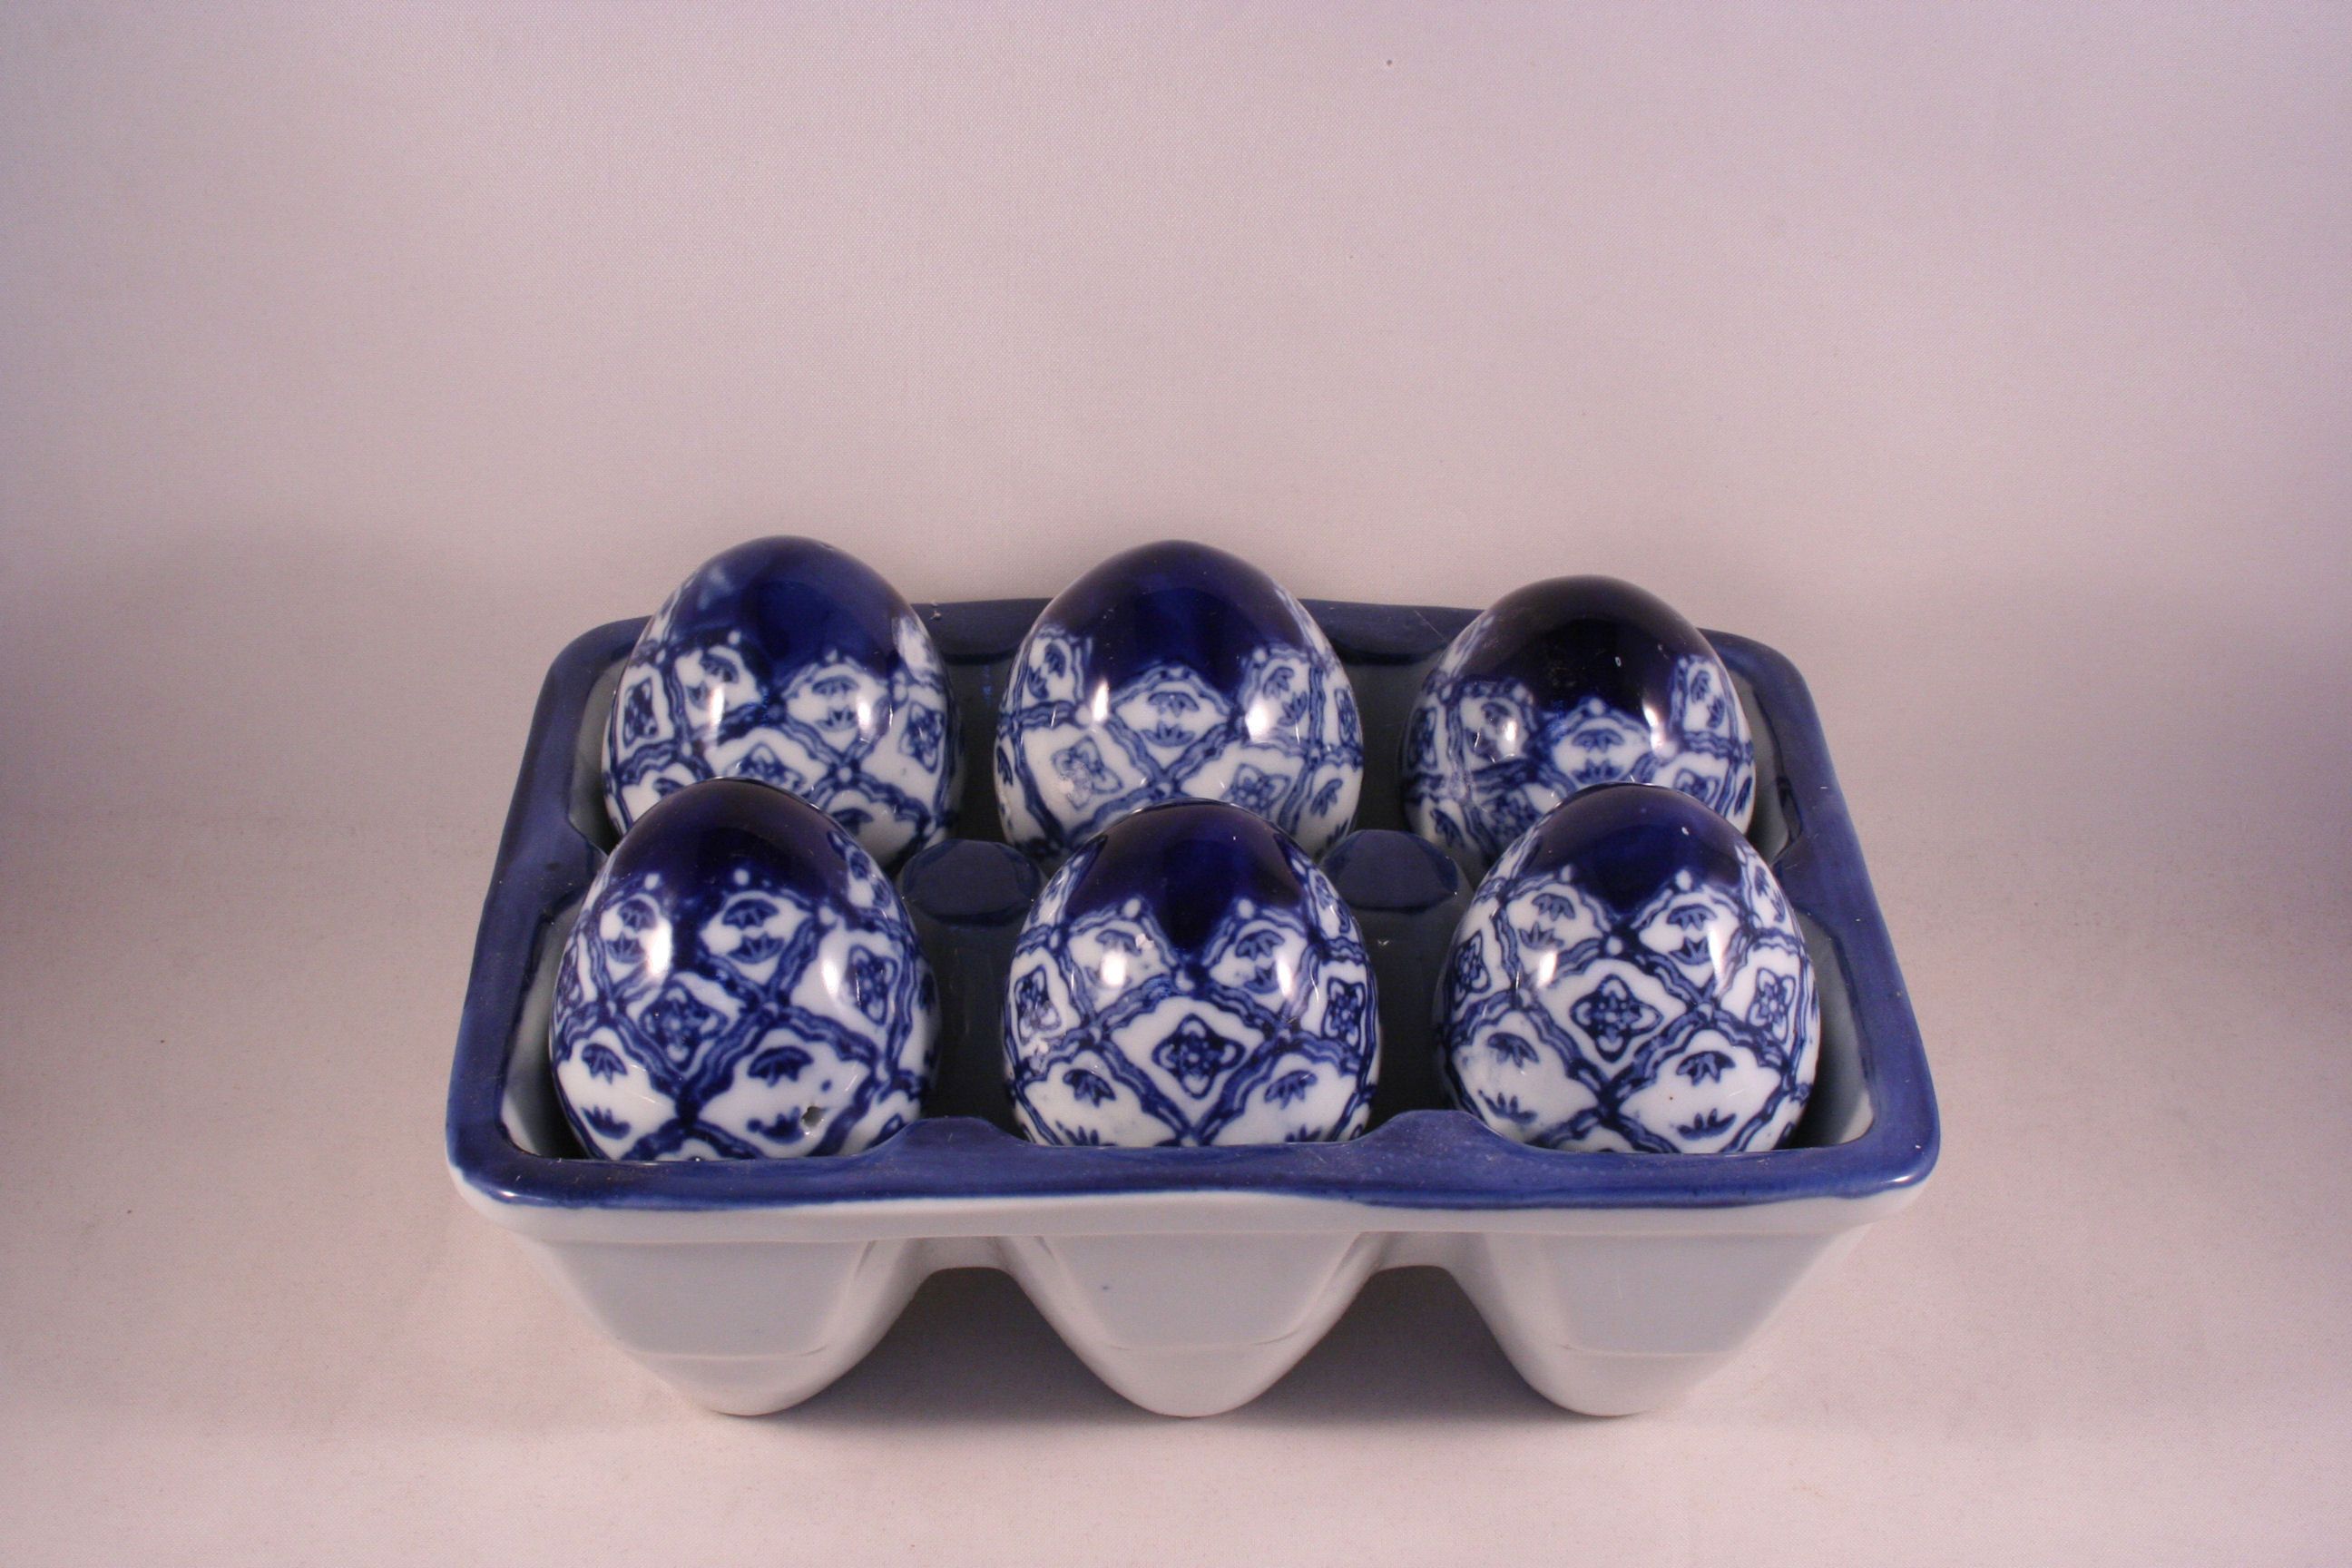 Blue White Willow Ceramic Eggs with Ceramic Crate Carton Container